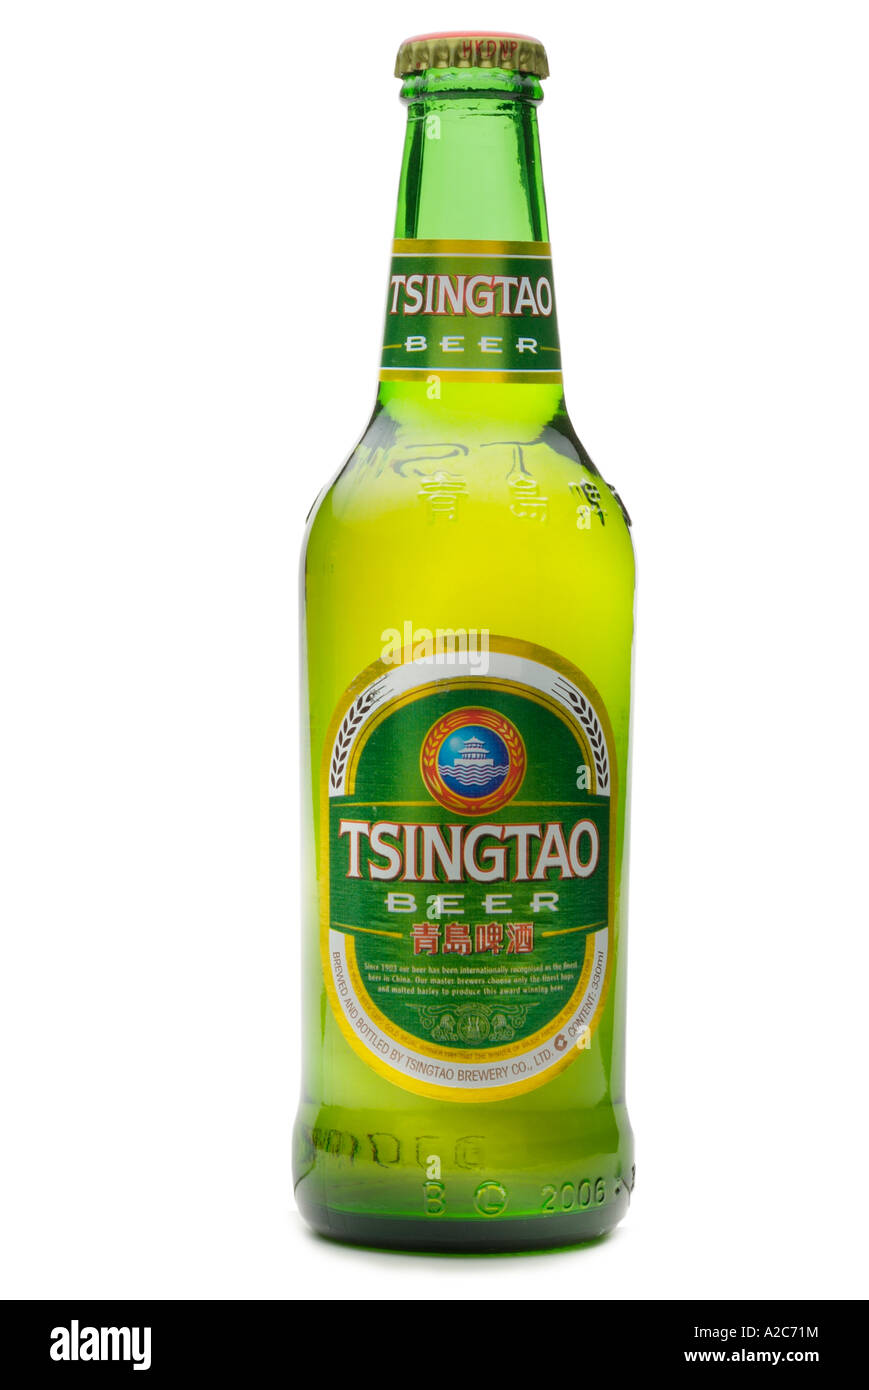 La BIRRA TSINGTAO importato cinese Cina orient oriental estremo oriente  Asia crown top verde bottiglia di vetro orzo alcool bere birra Foto stock -  Alamy